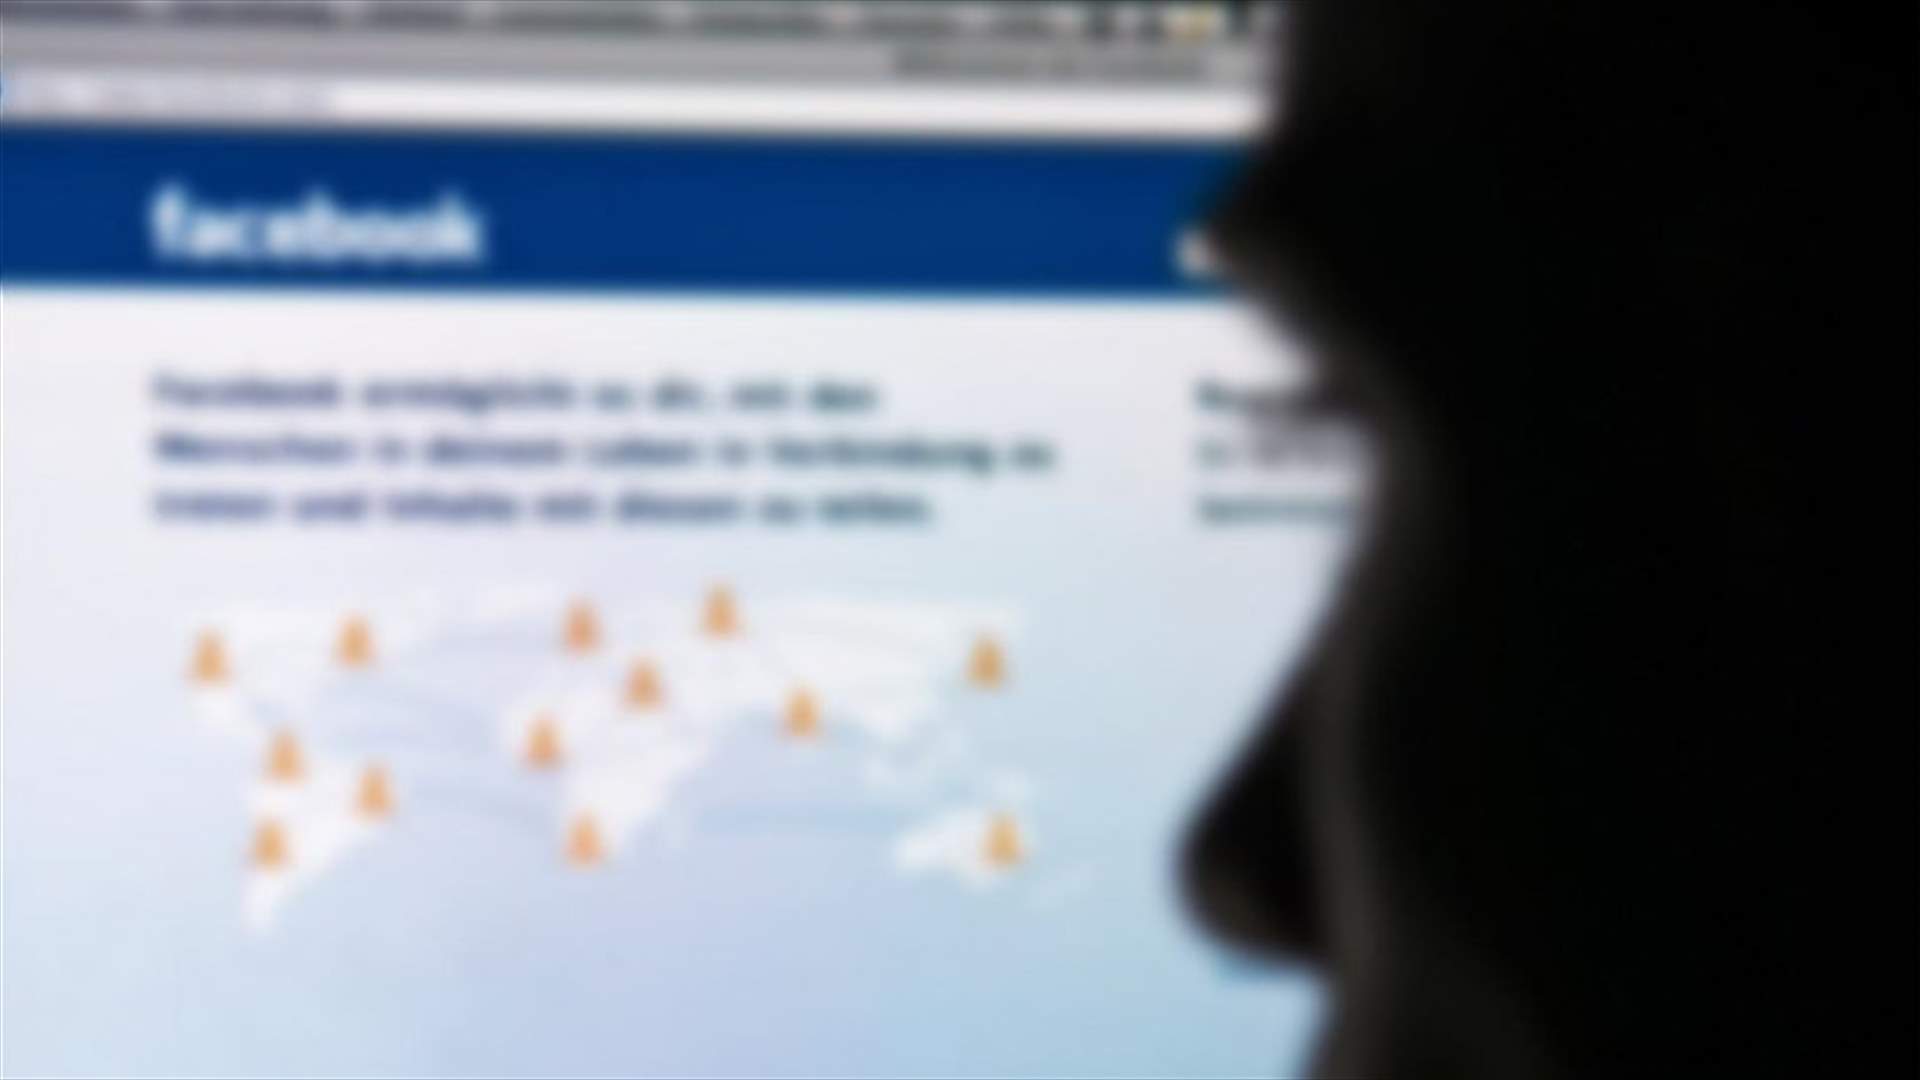 عطل مفاجئ يصيب فيسبوك وانستغرام في بعض الدول